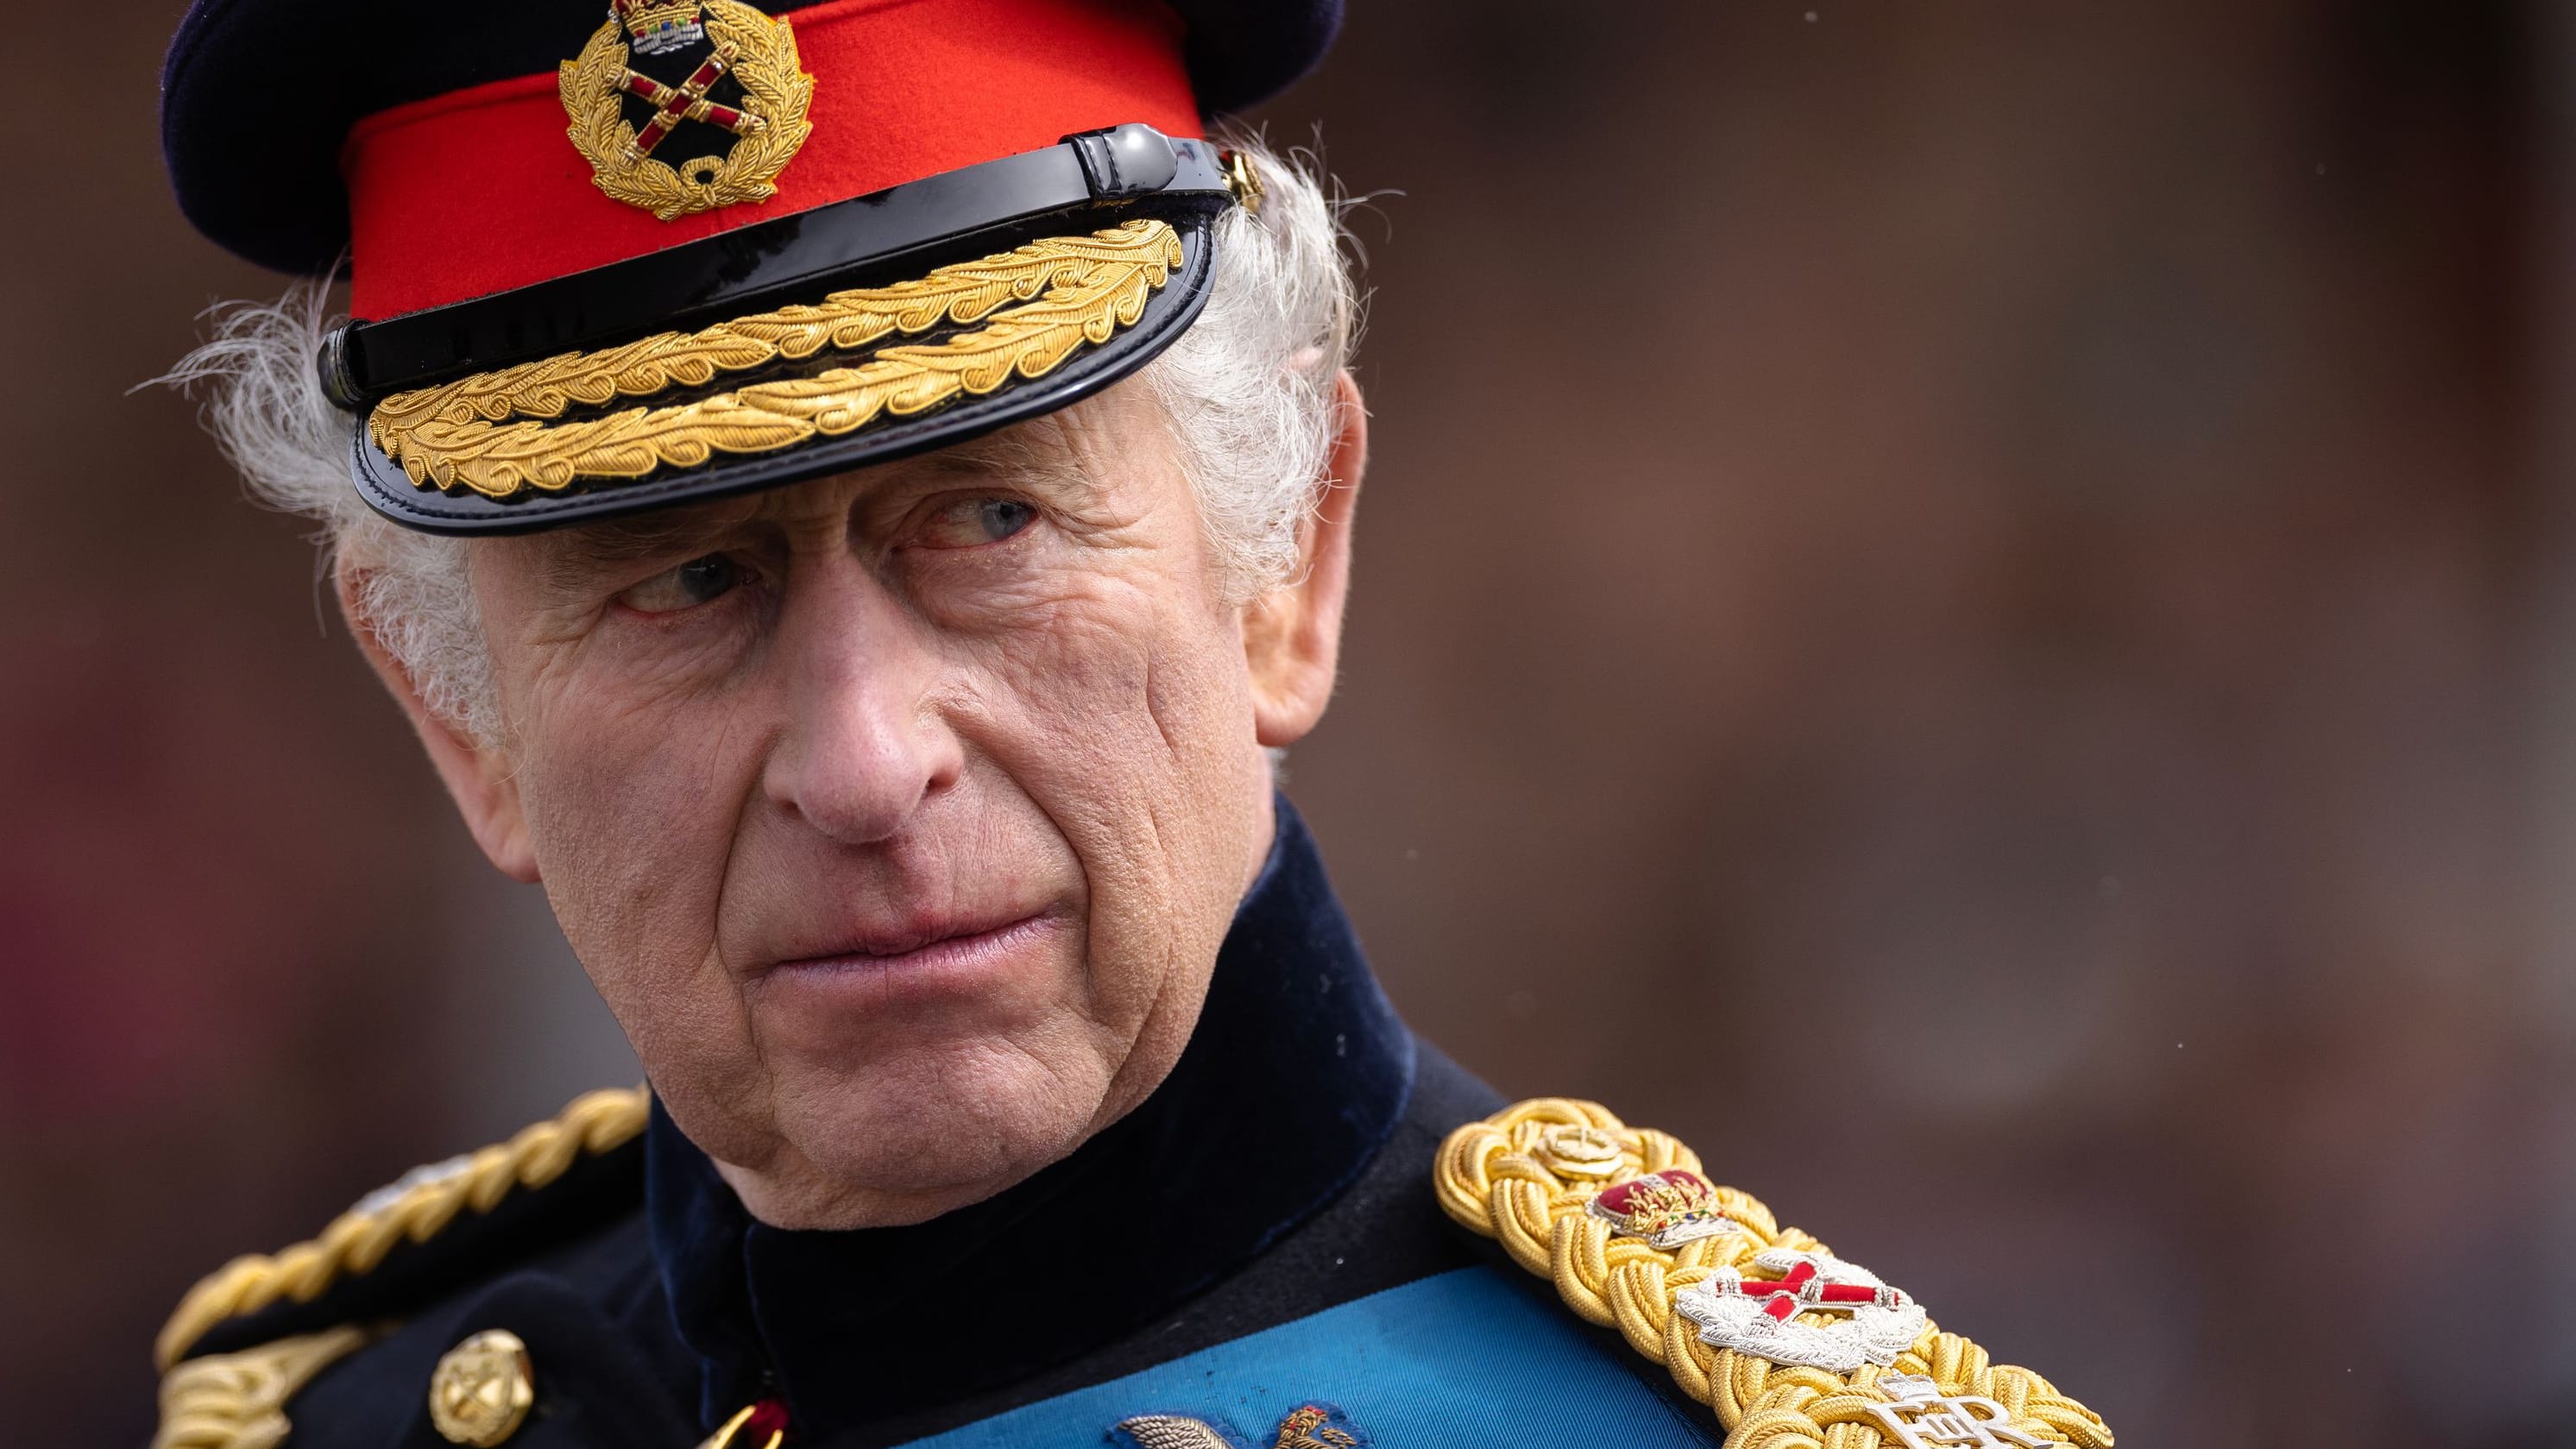 König Charles III. vergibt Ehrentitel an Prinz William anstatt Prinz Harry